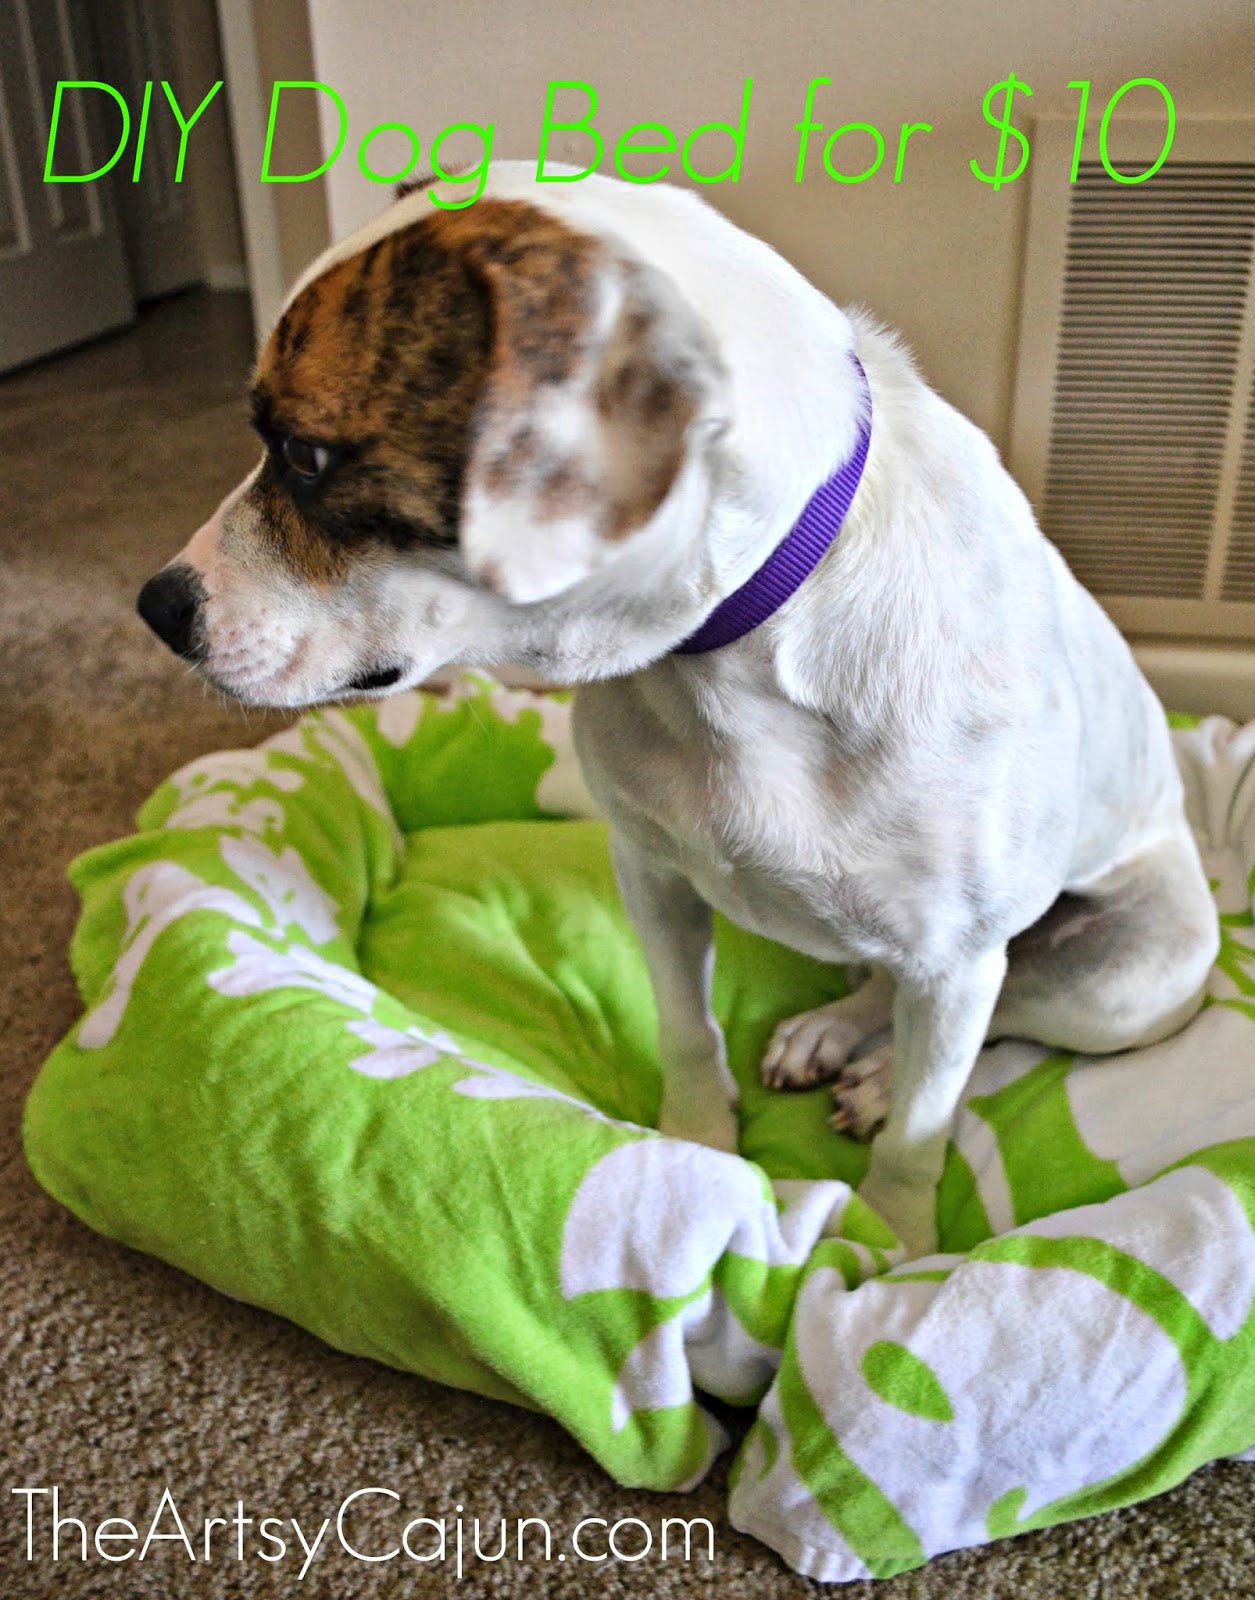 DIY dog bed for $10 | The Artsy Cajun